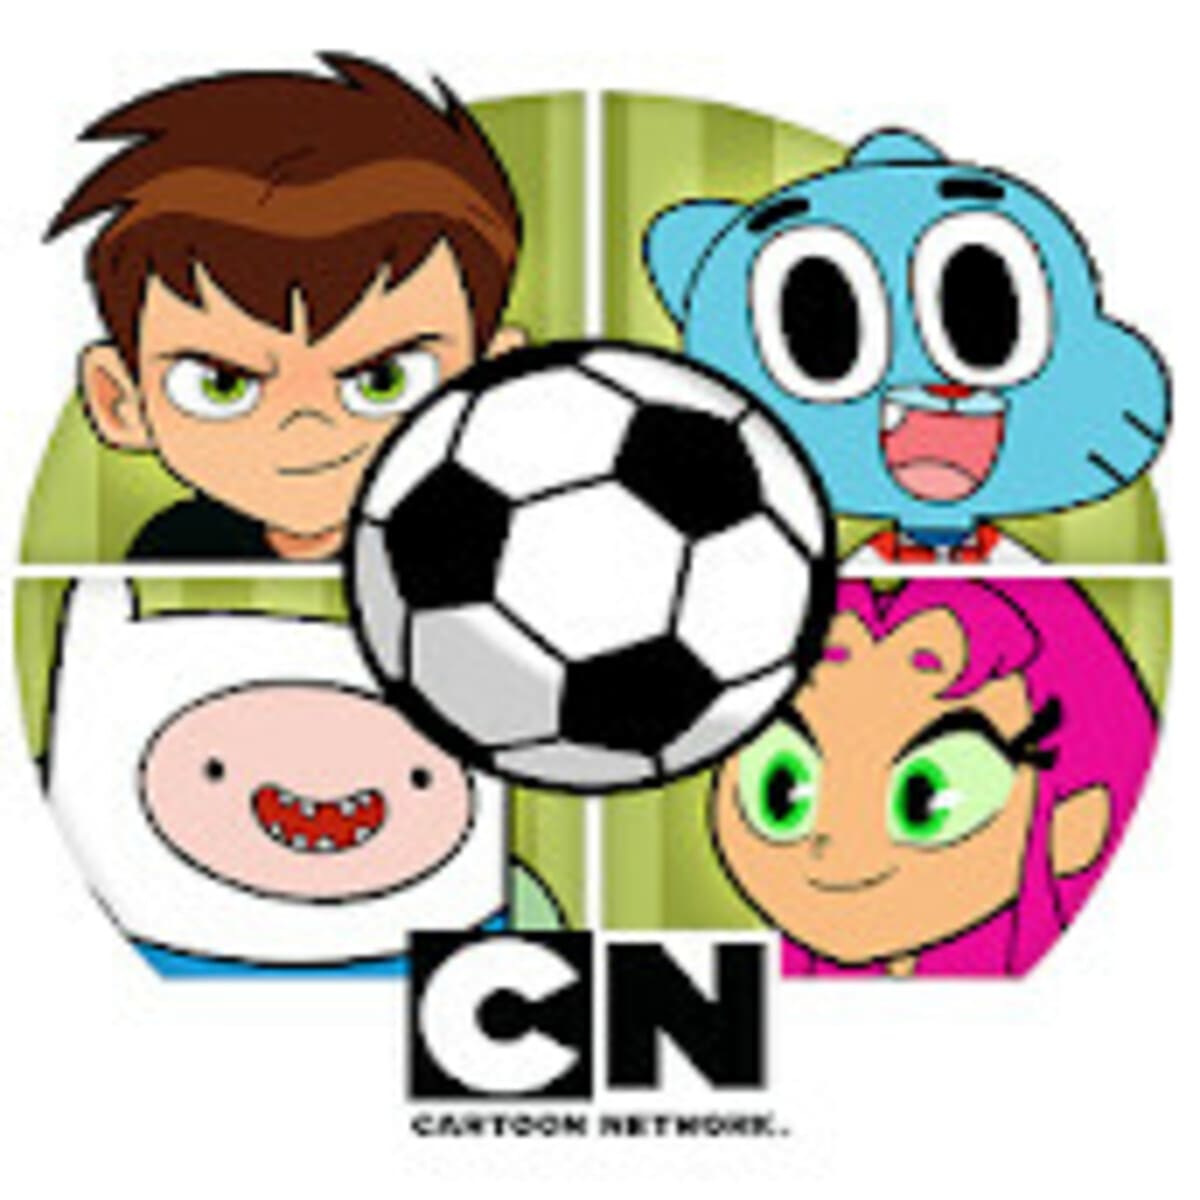 العاب cn cartoon network بالعربية